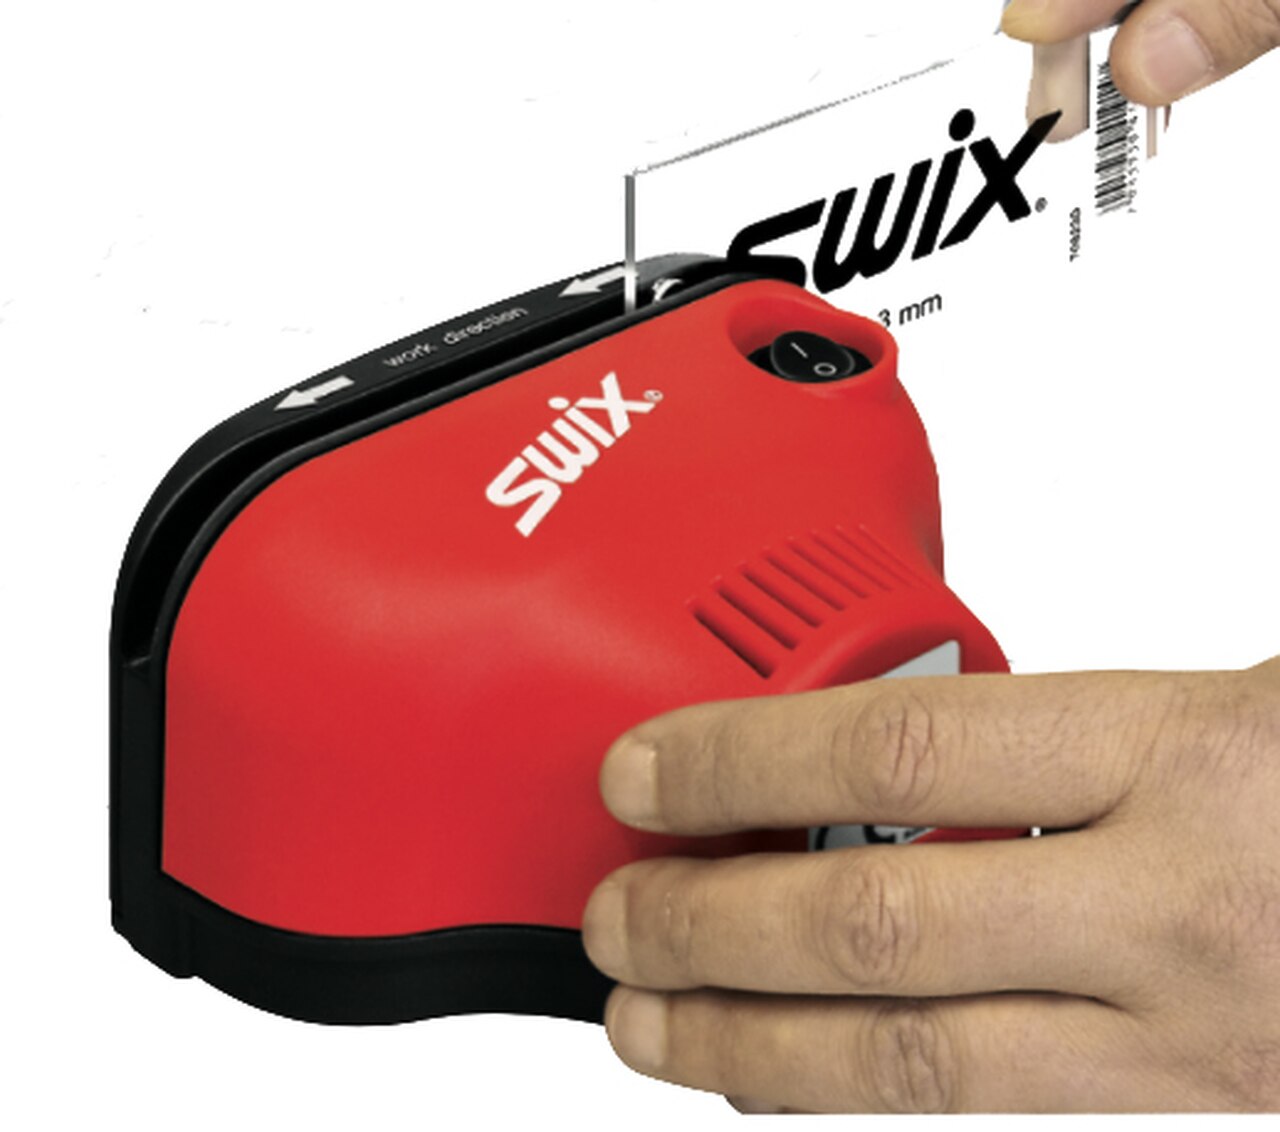 Swix Electric Scraper Sharpener